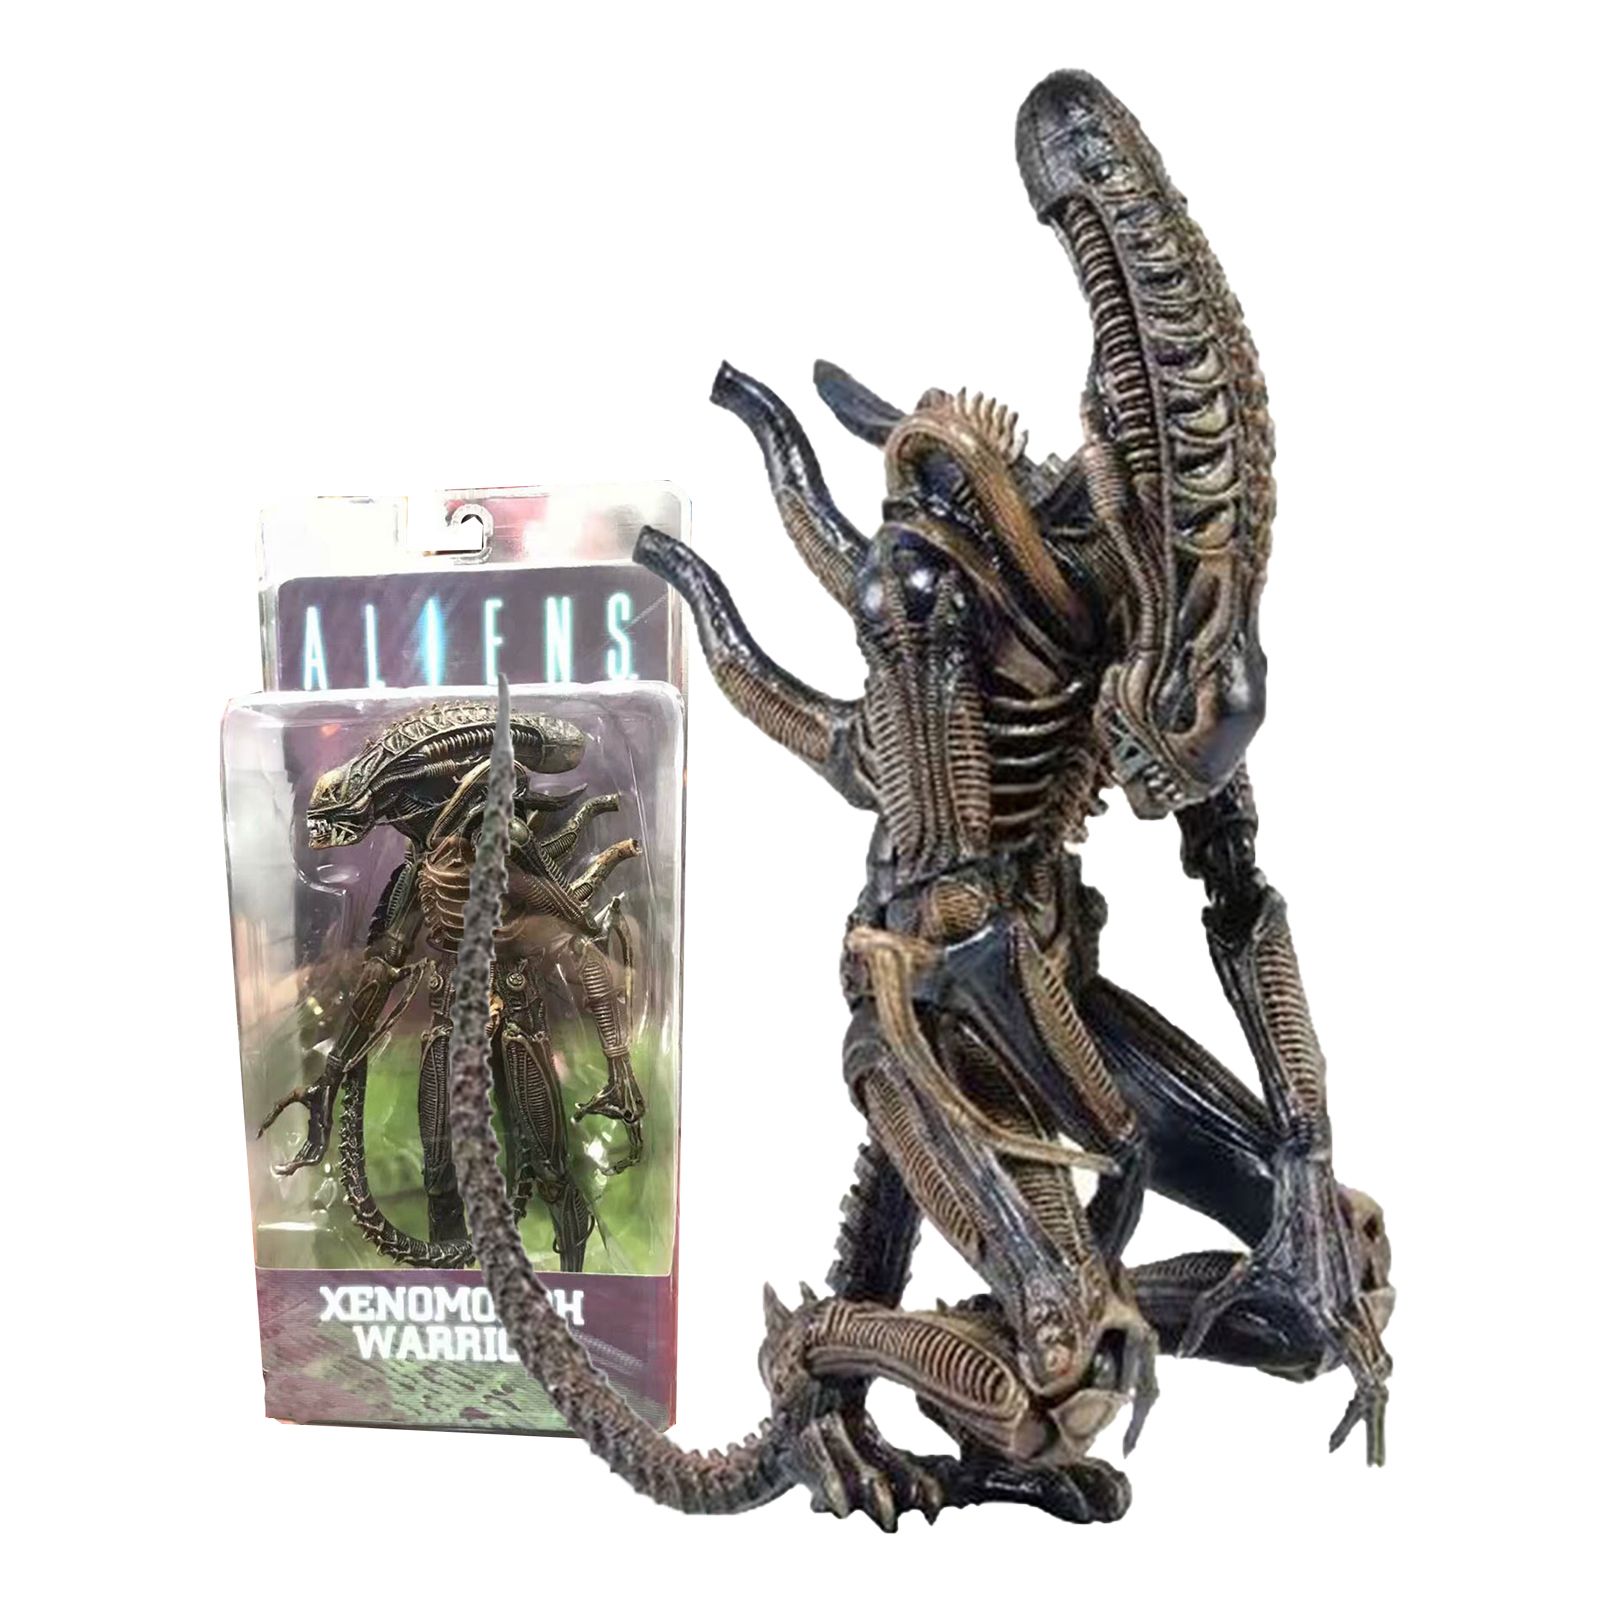 Alien vs predator collection steam фото 79